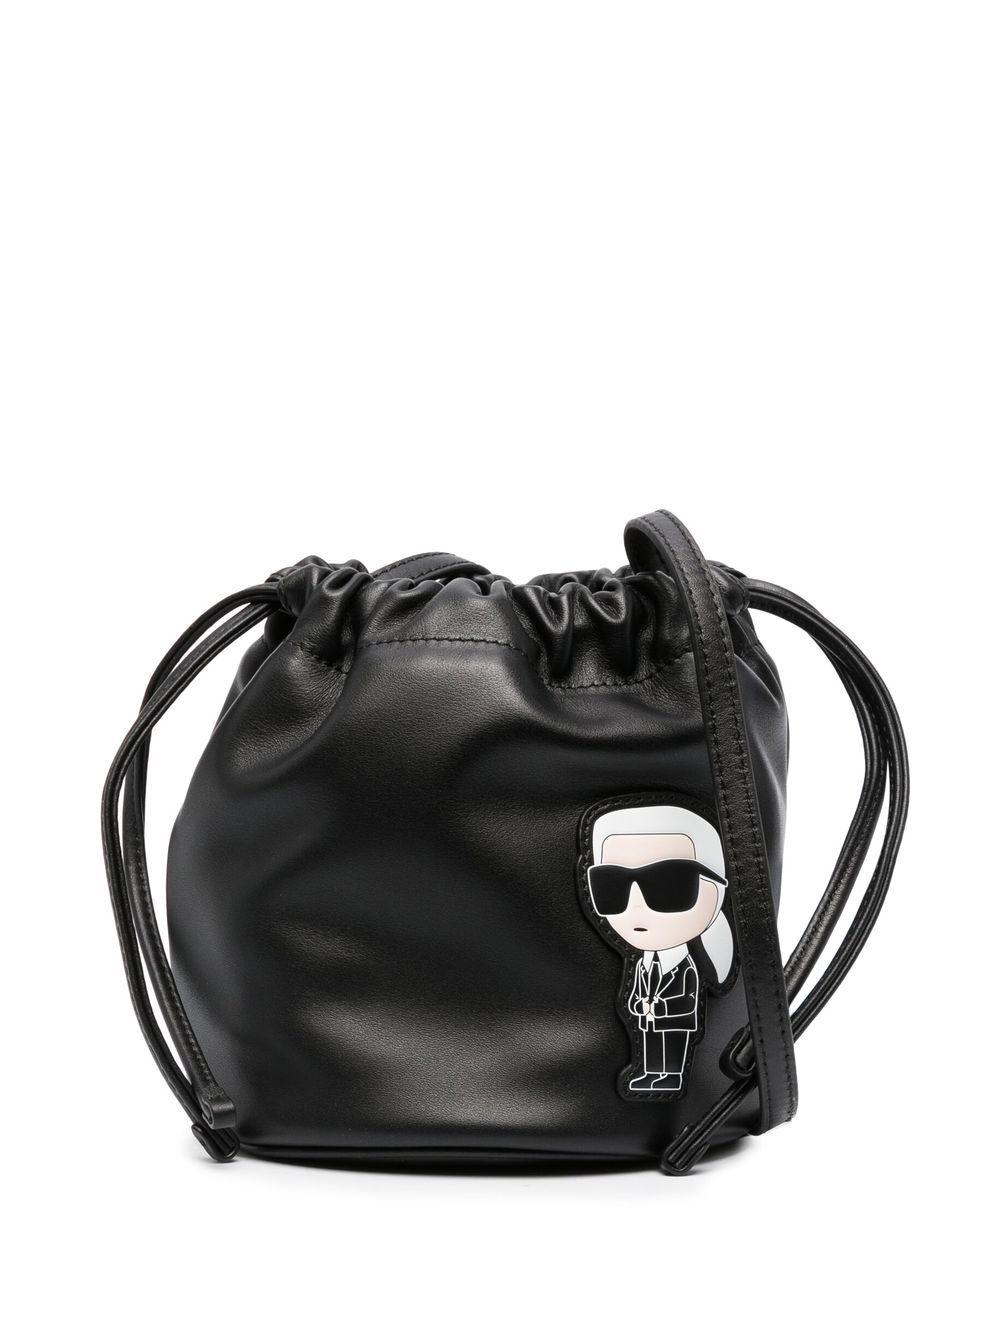 Karl Lagerfeld Ikonik 2.0 Bucket Bag in Black | Lyst